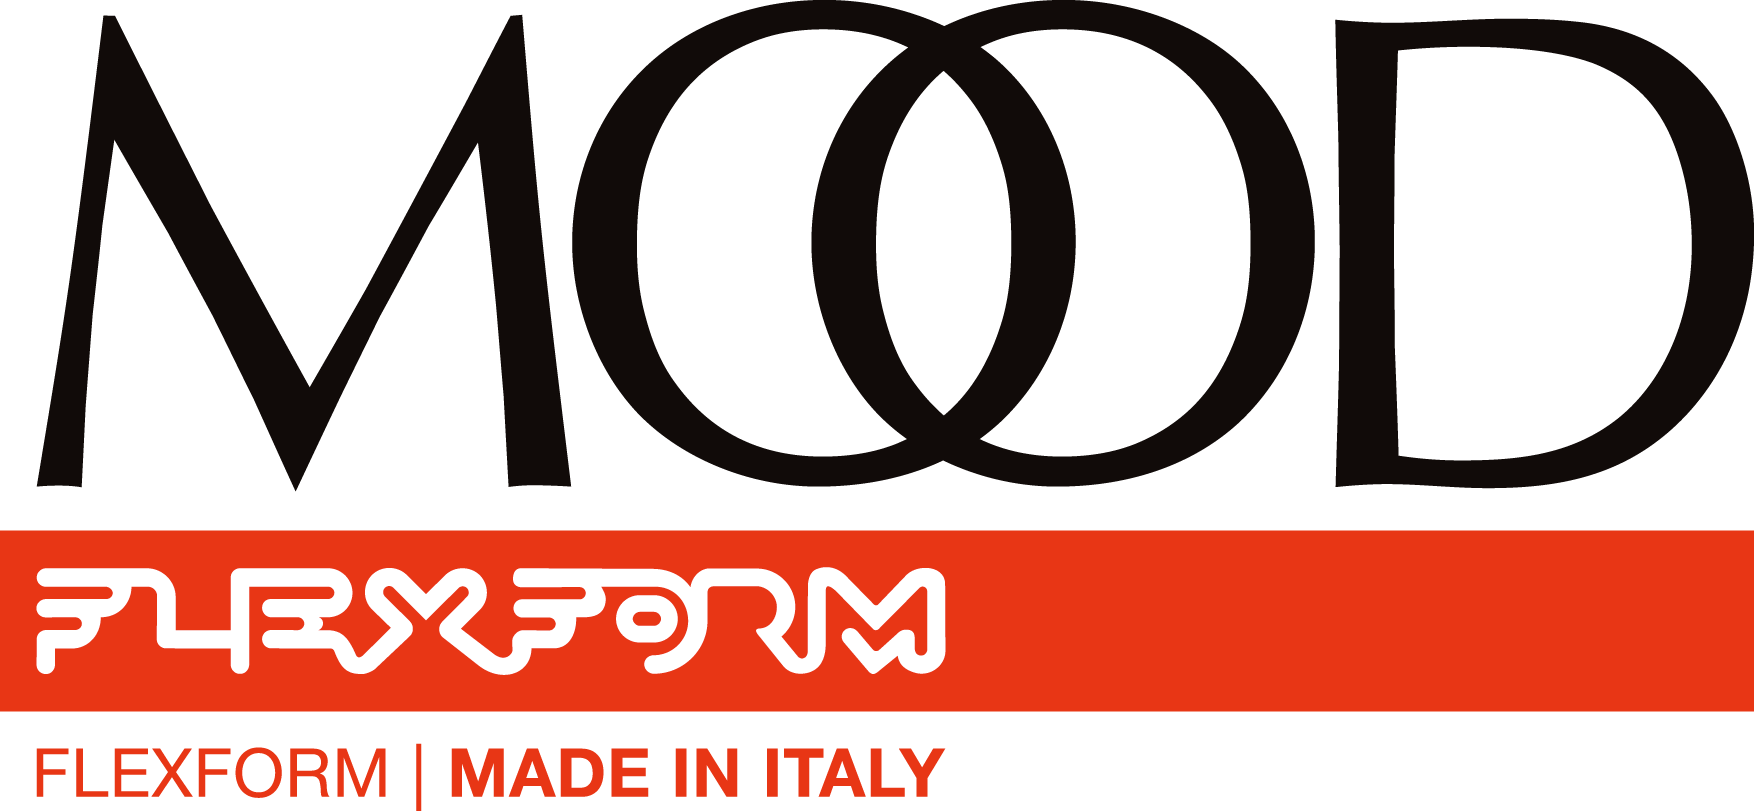 Made.com Logo - Flexform Modern Furniture